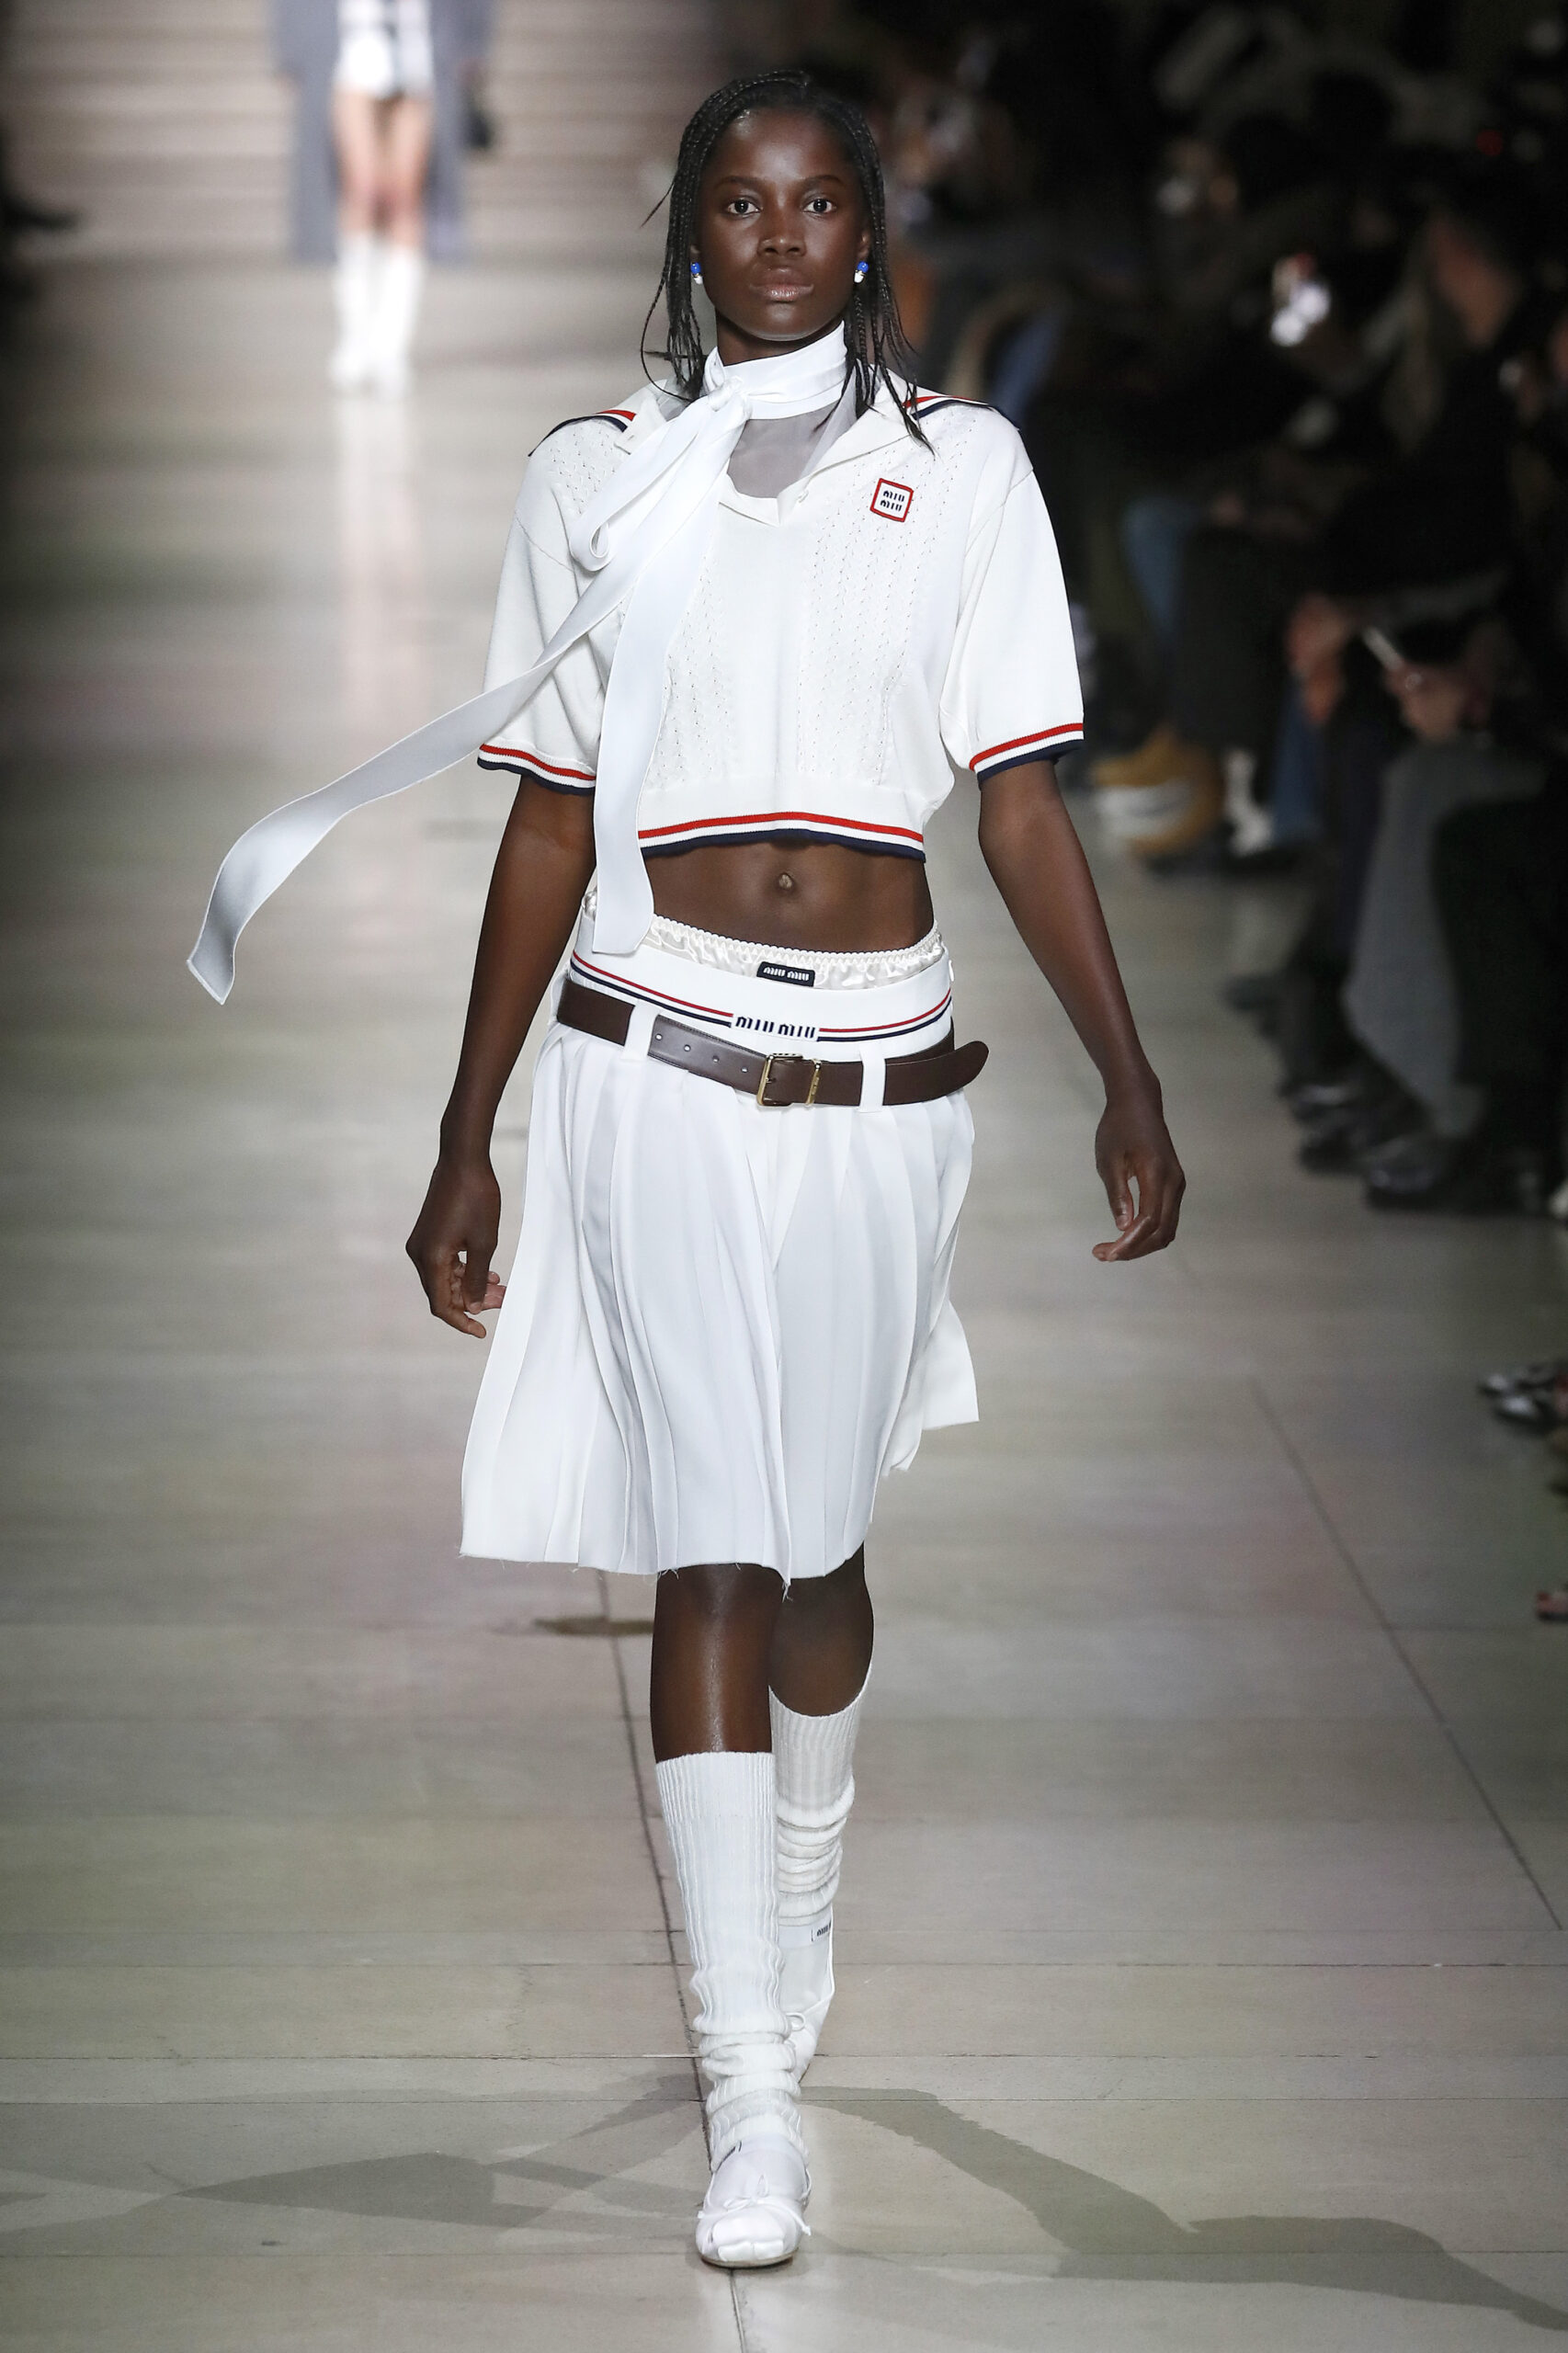 Egy modell fehér felsőben, szoknyában és fehér balerinában sétál a Párizsi Fashion Week kifutóján